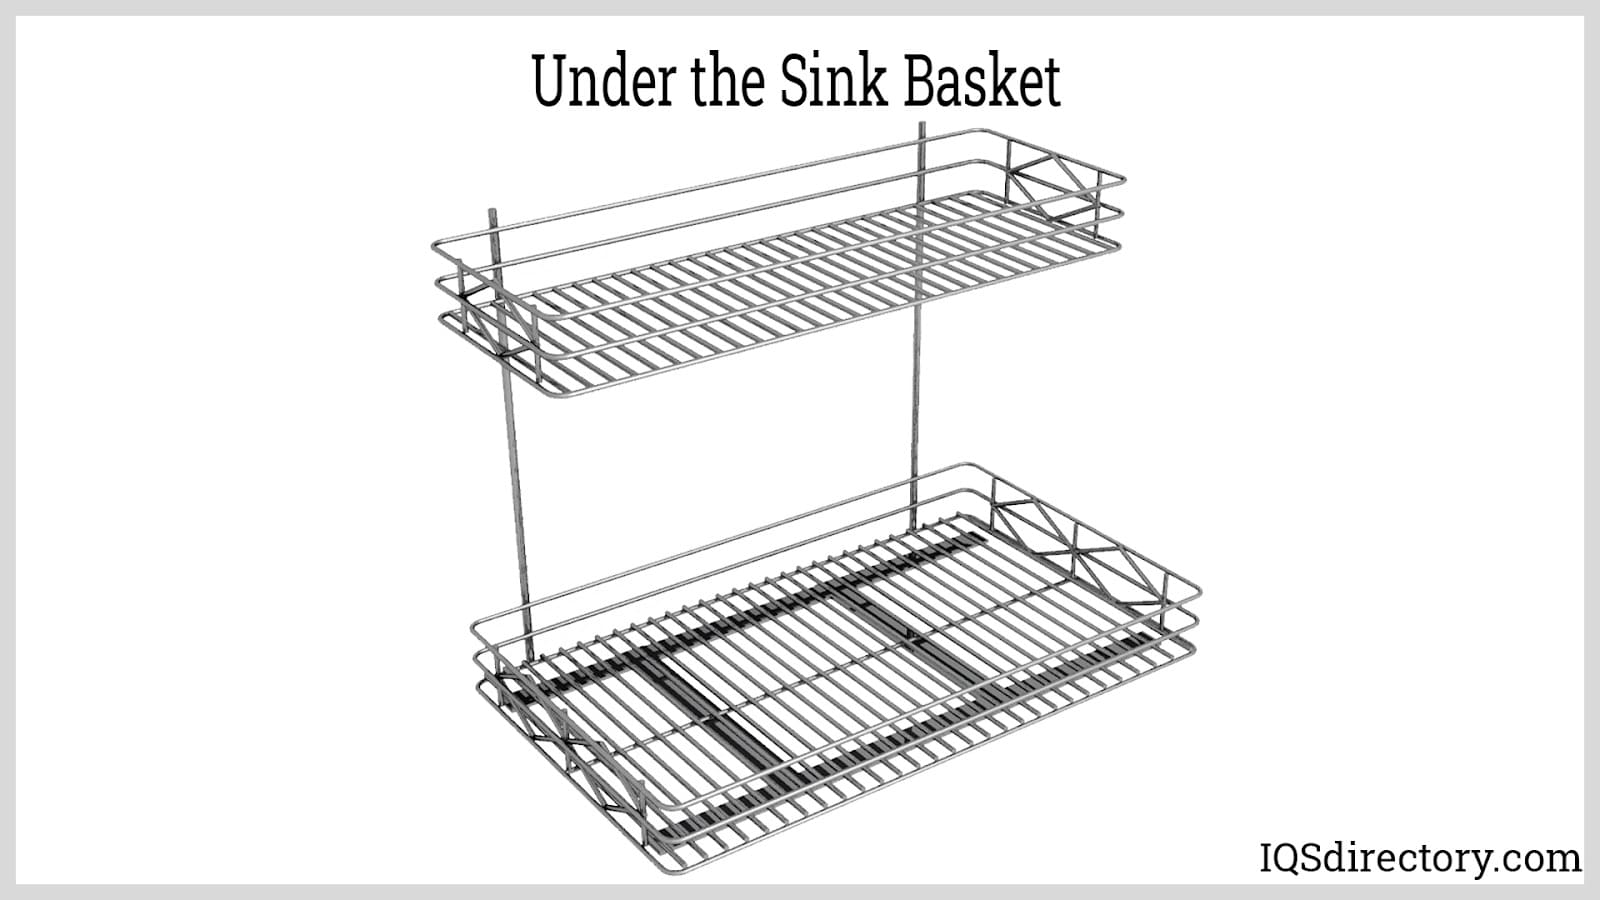 Under the Sink Basket